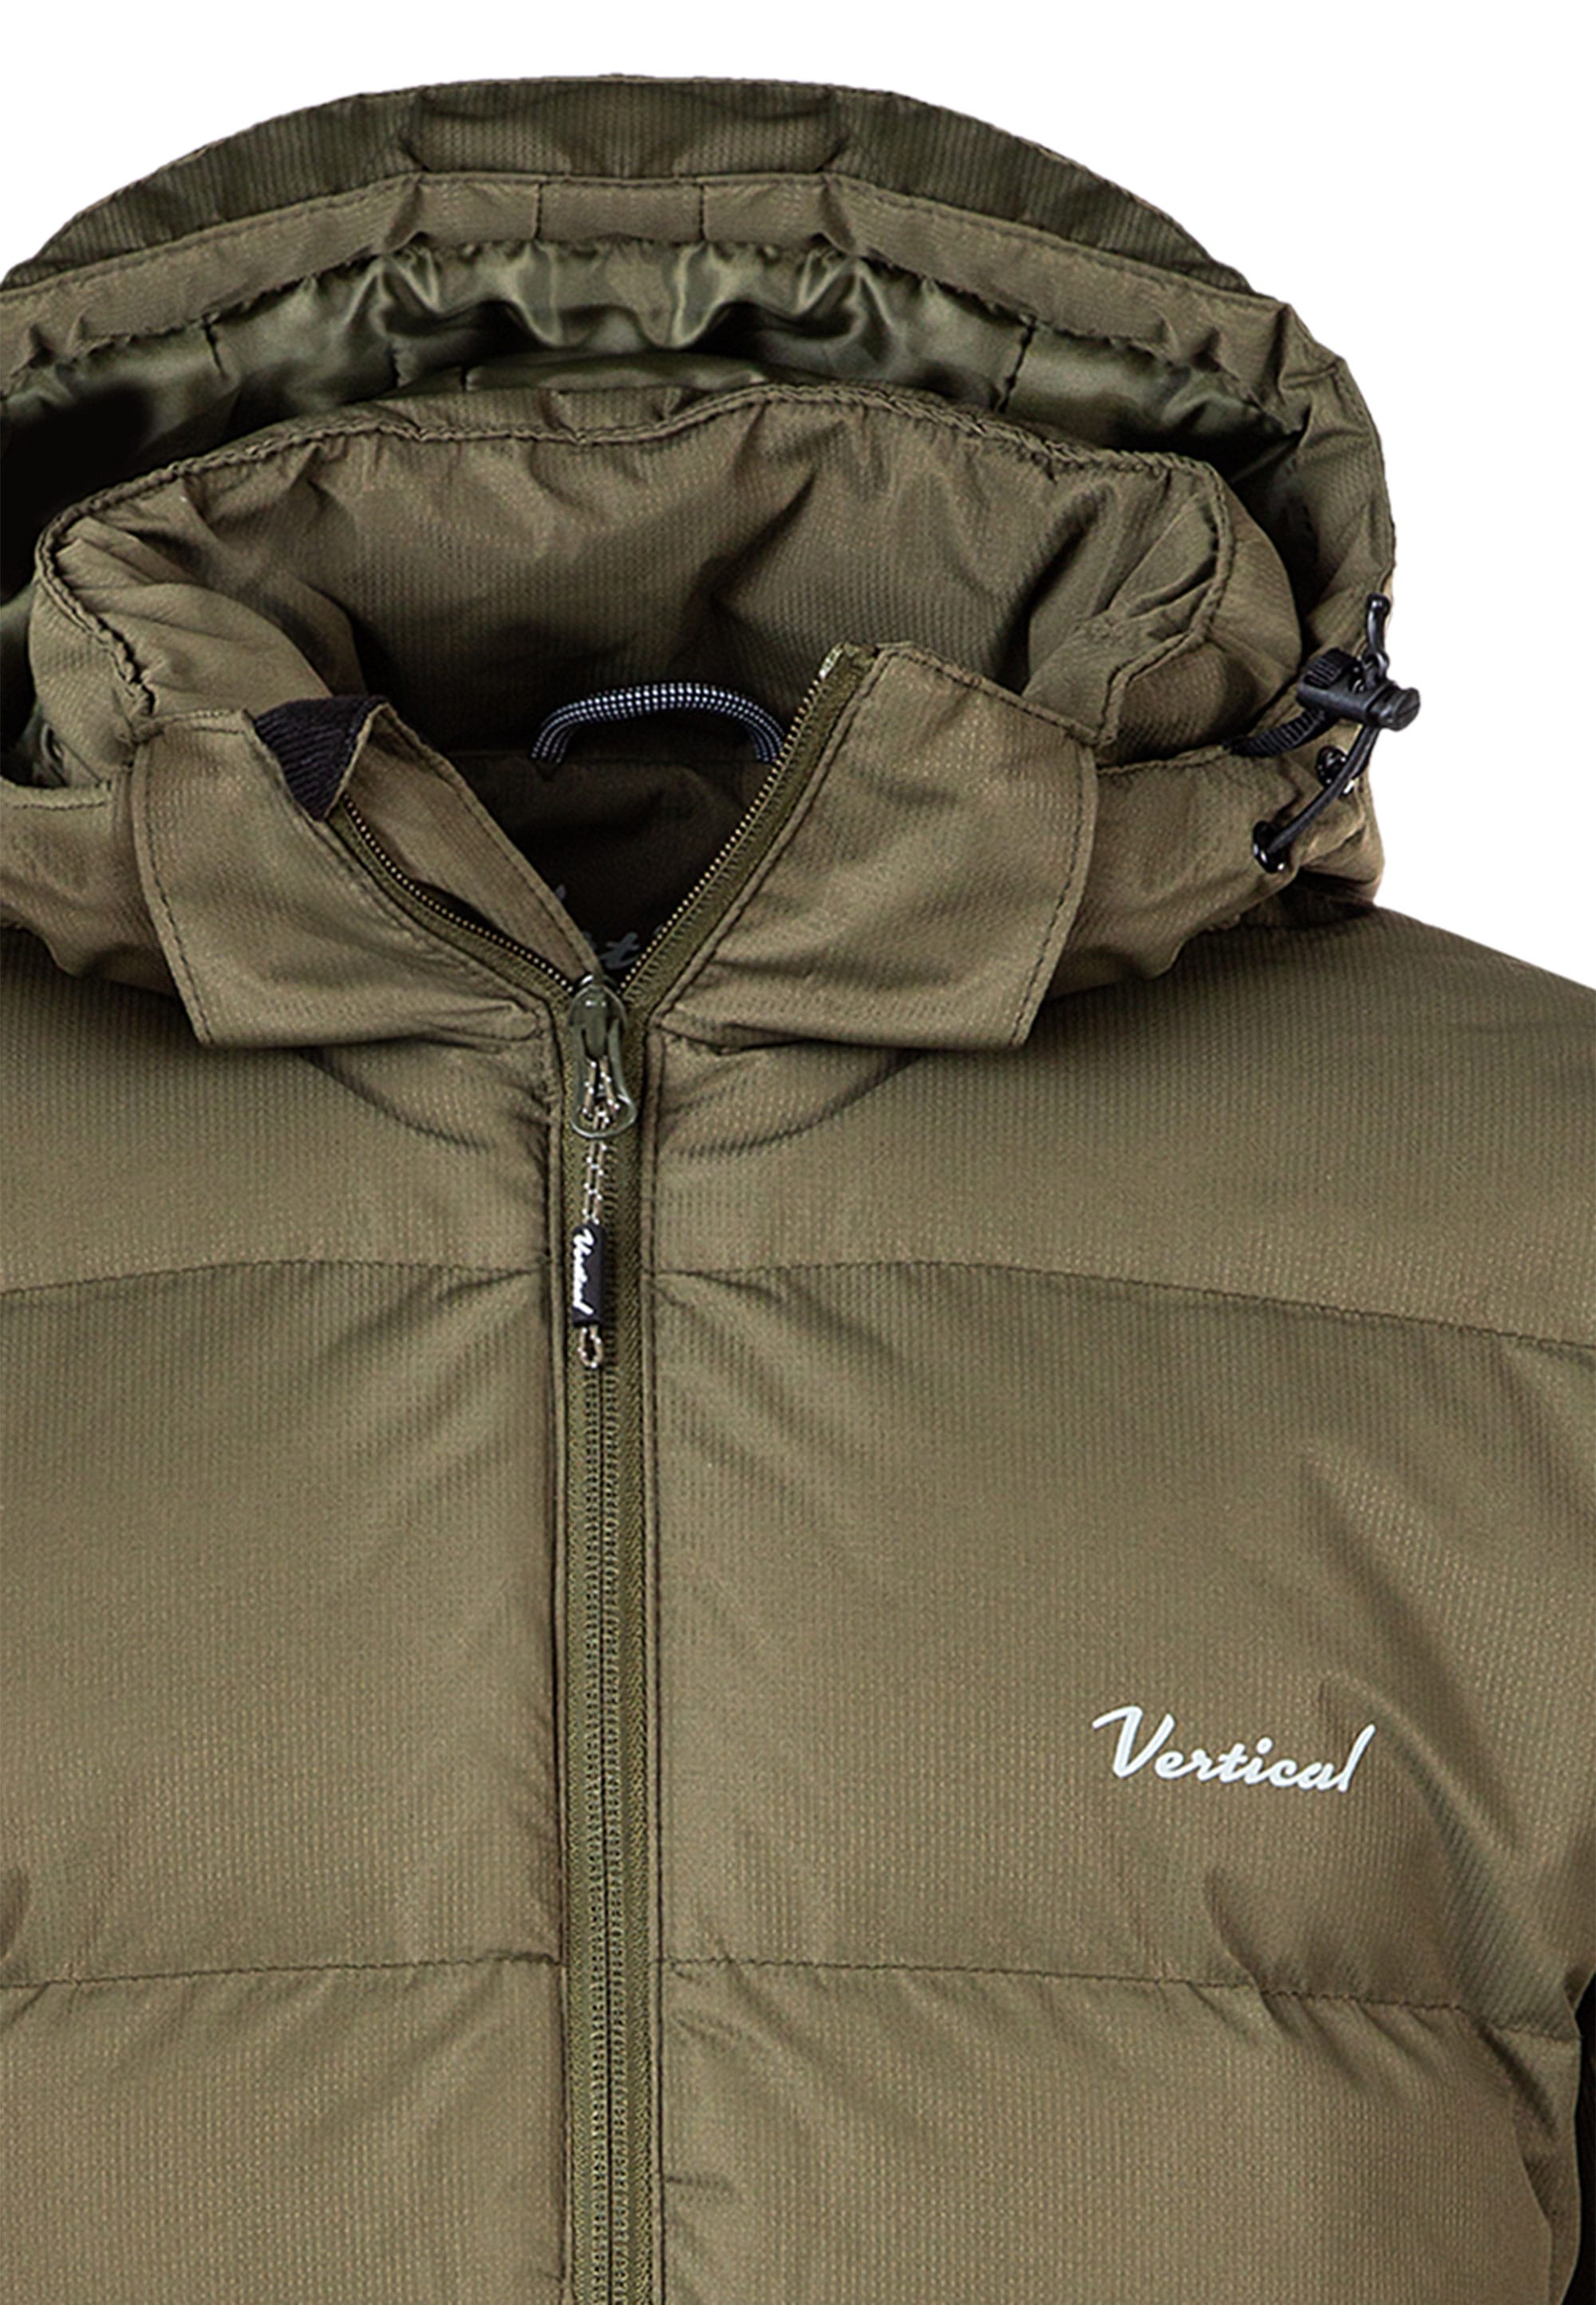 Vertical Outdoorjacke »Dorchester«, warming puff winter jacket ▷ bestellen  | BAUR